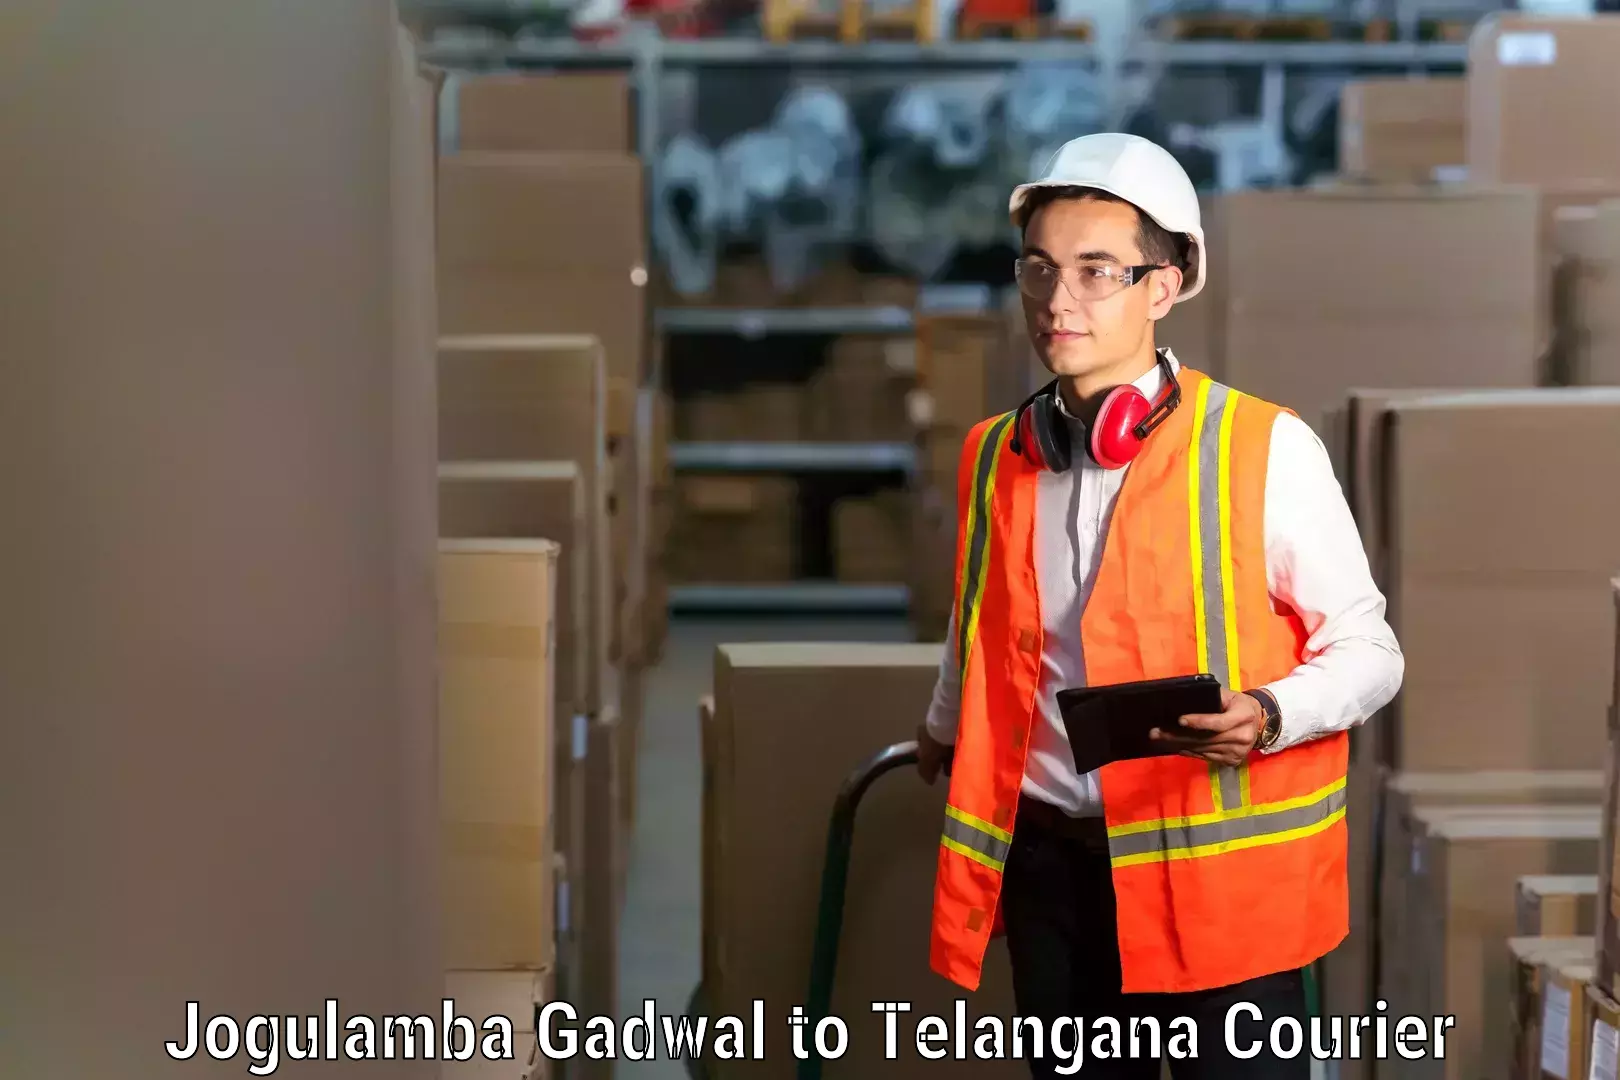 Professional moving company Jogulamba Gadwal to Sathupally